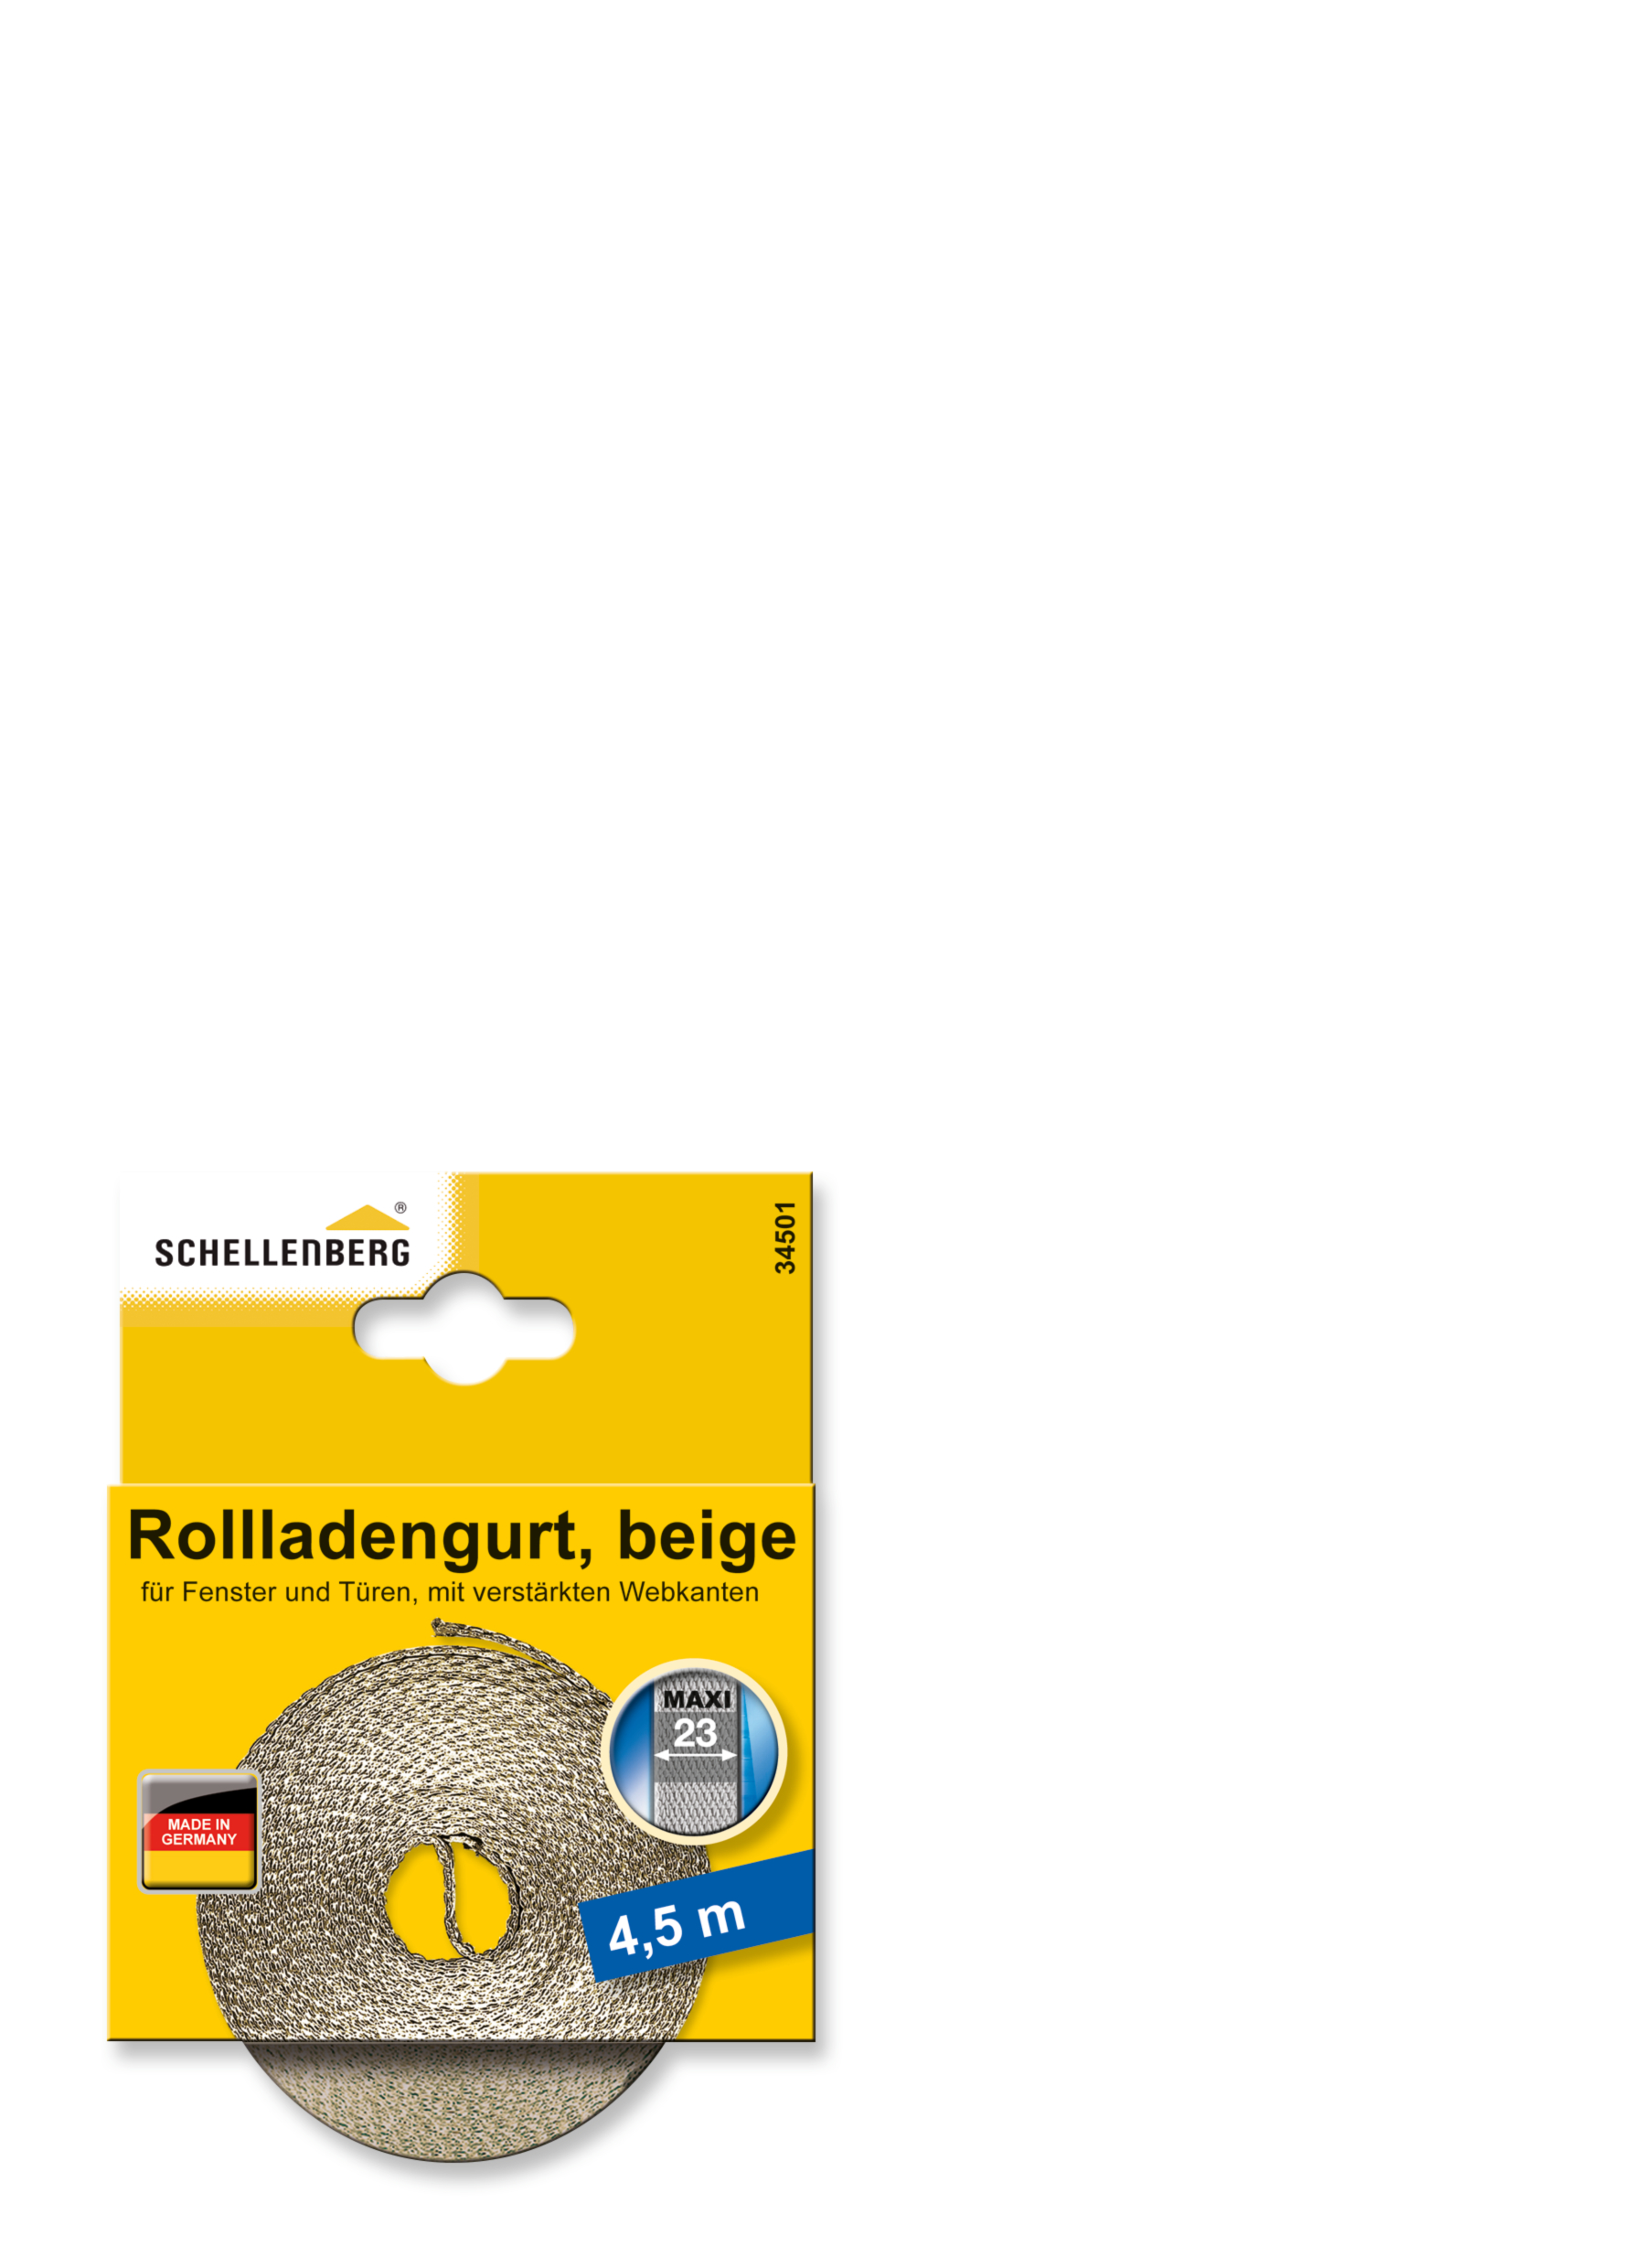 SCHELLENBERG Rollladengurt 23 mm/4,5 m beige 